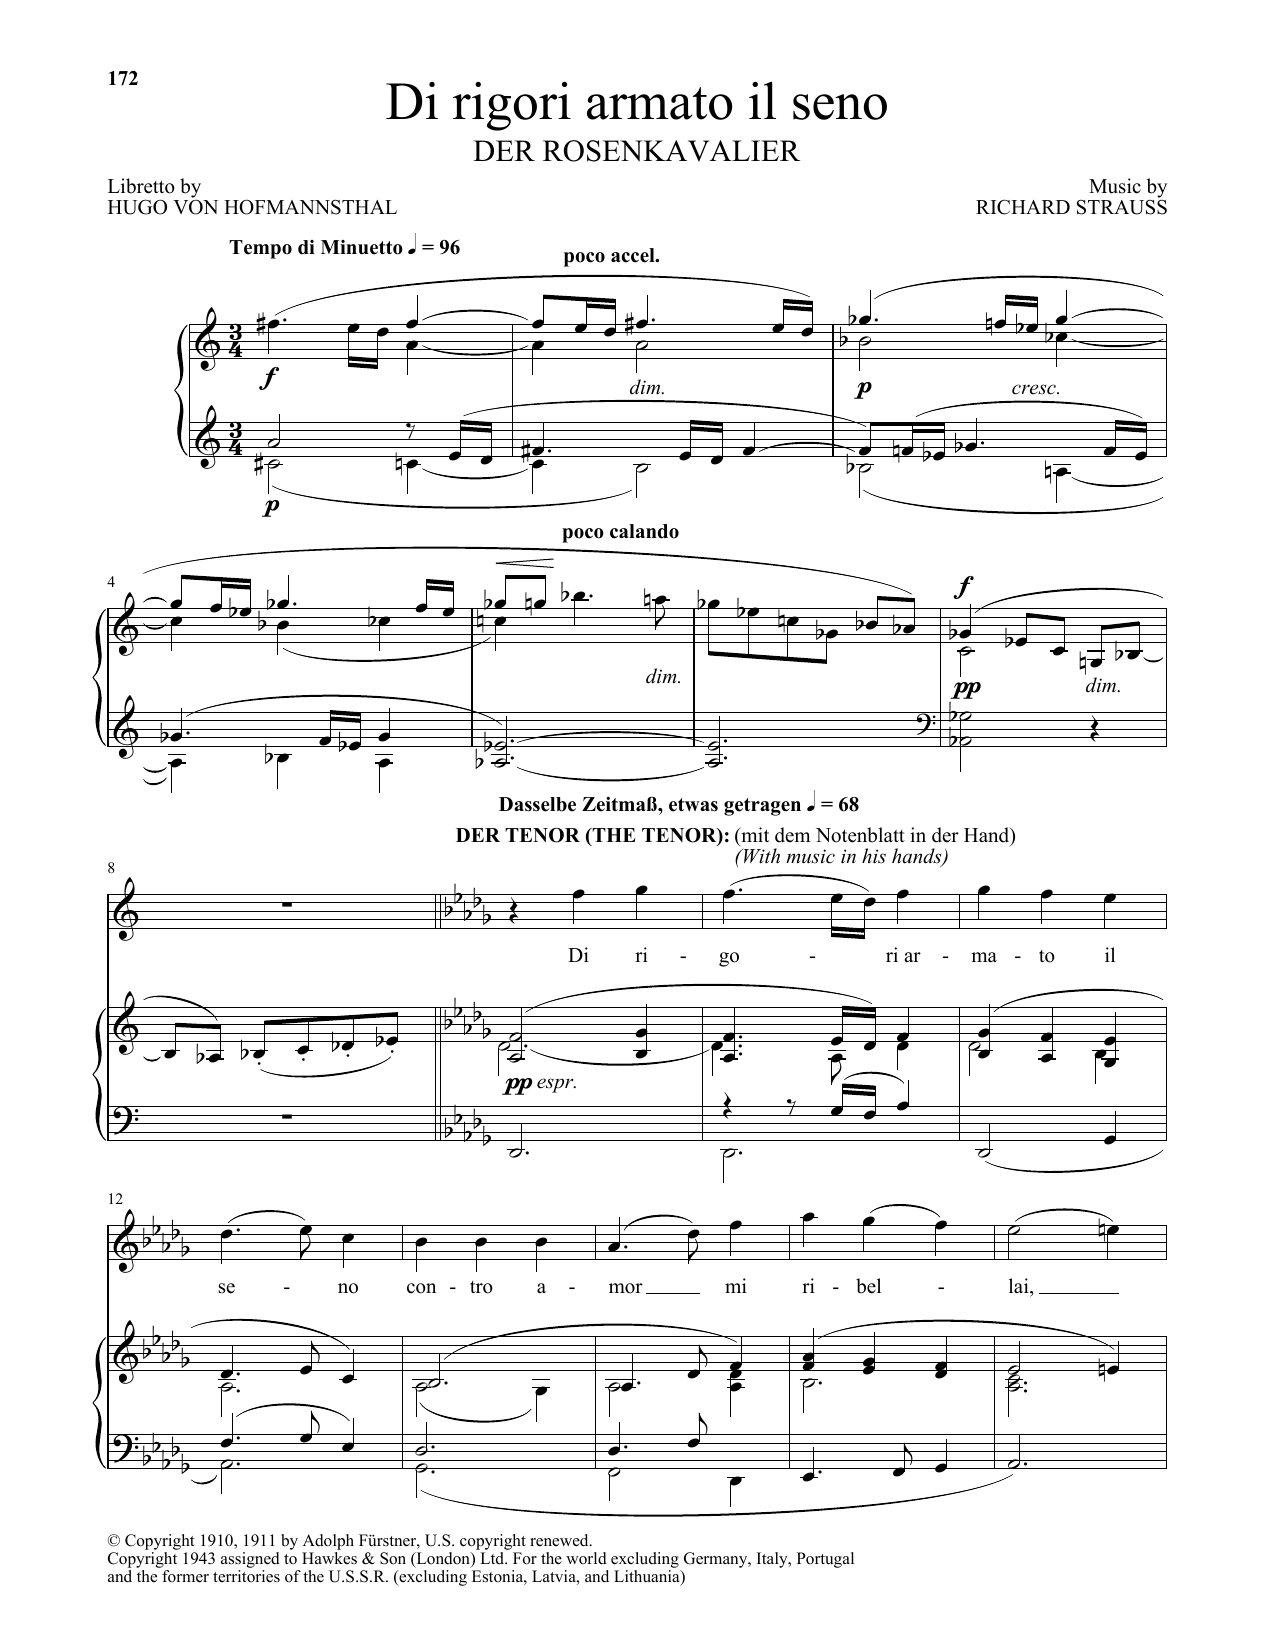 Download Richard Strauss Di Rigori Armato Il Seno Sheet Music and learn how to play Piano & Vocal PDF digital score in minutes